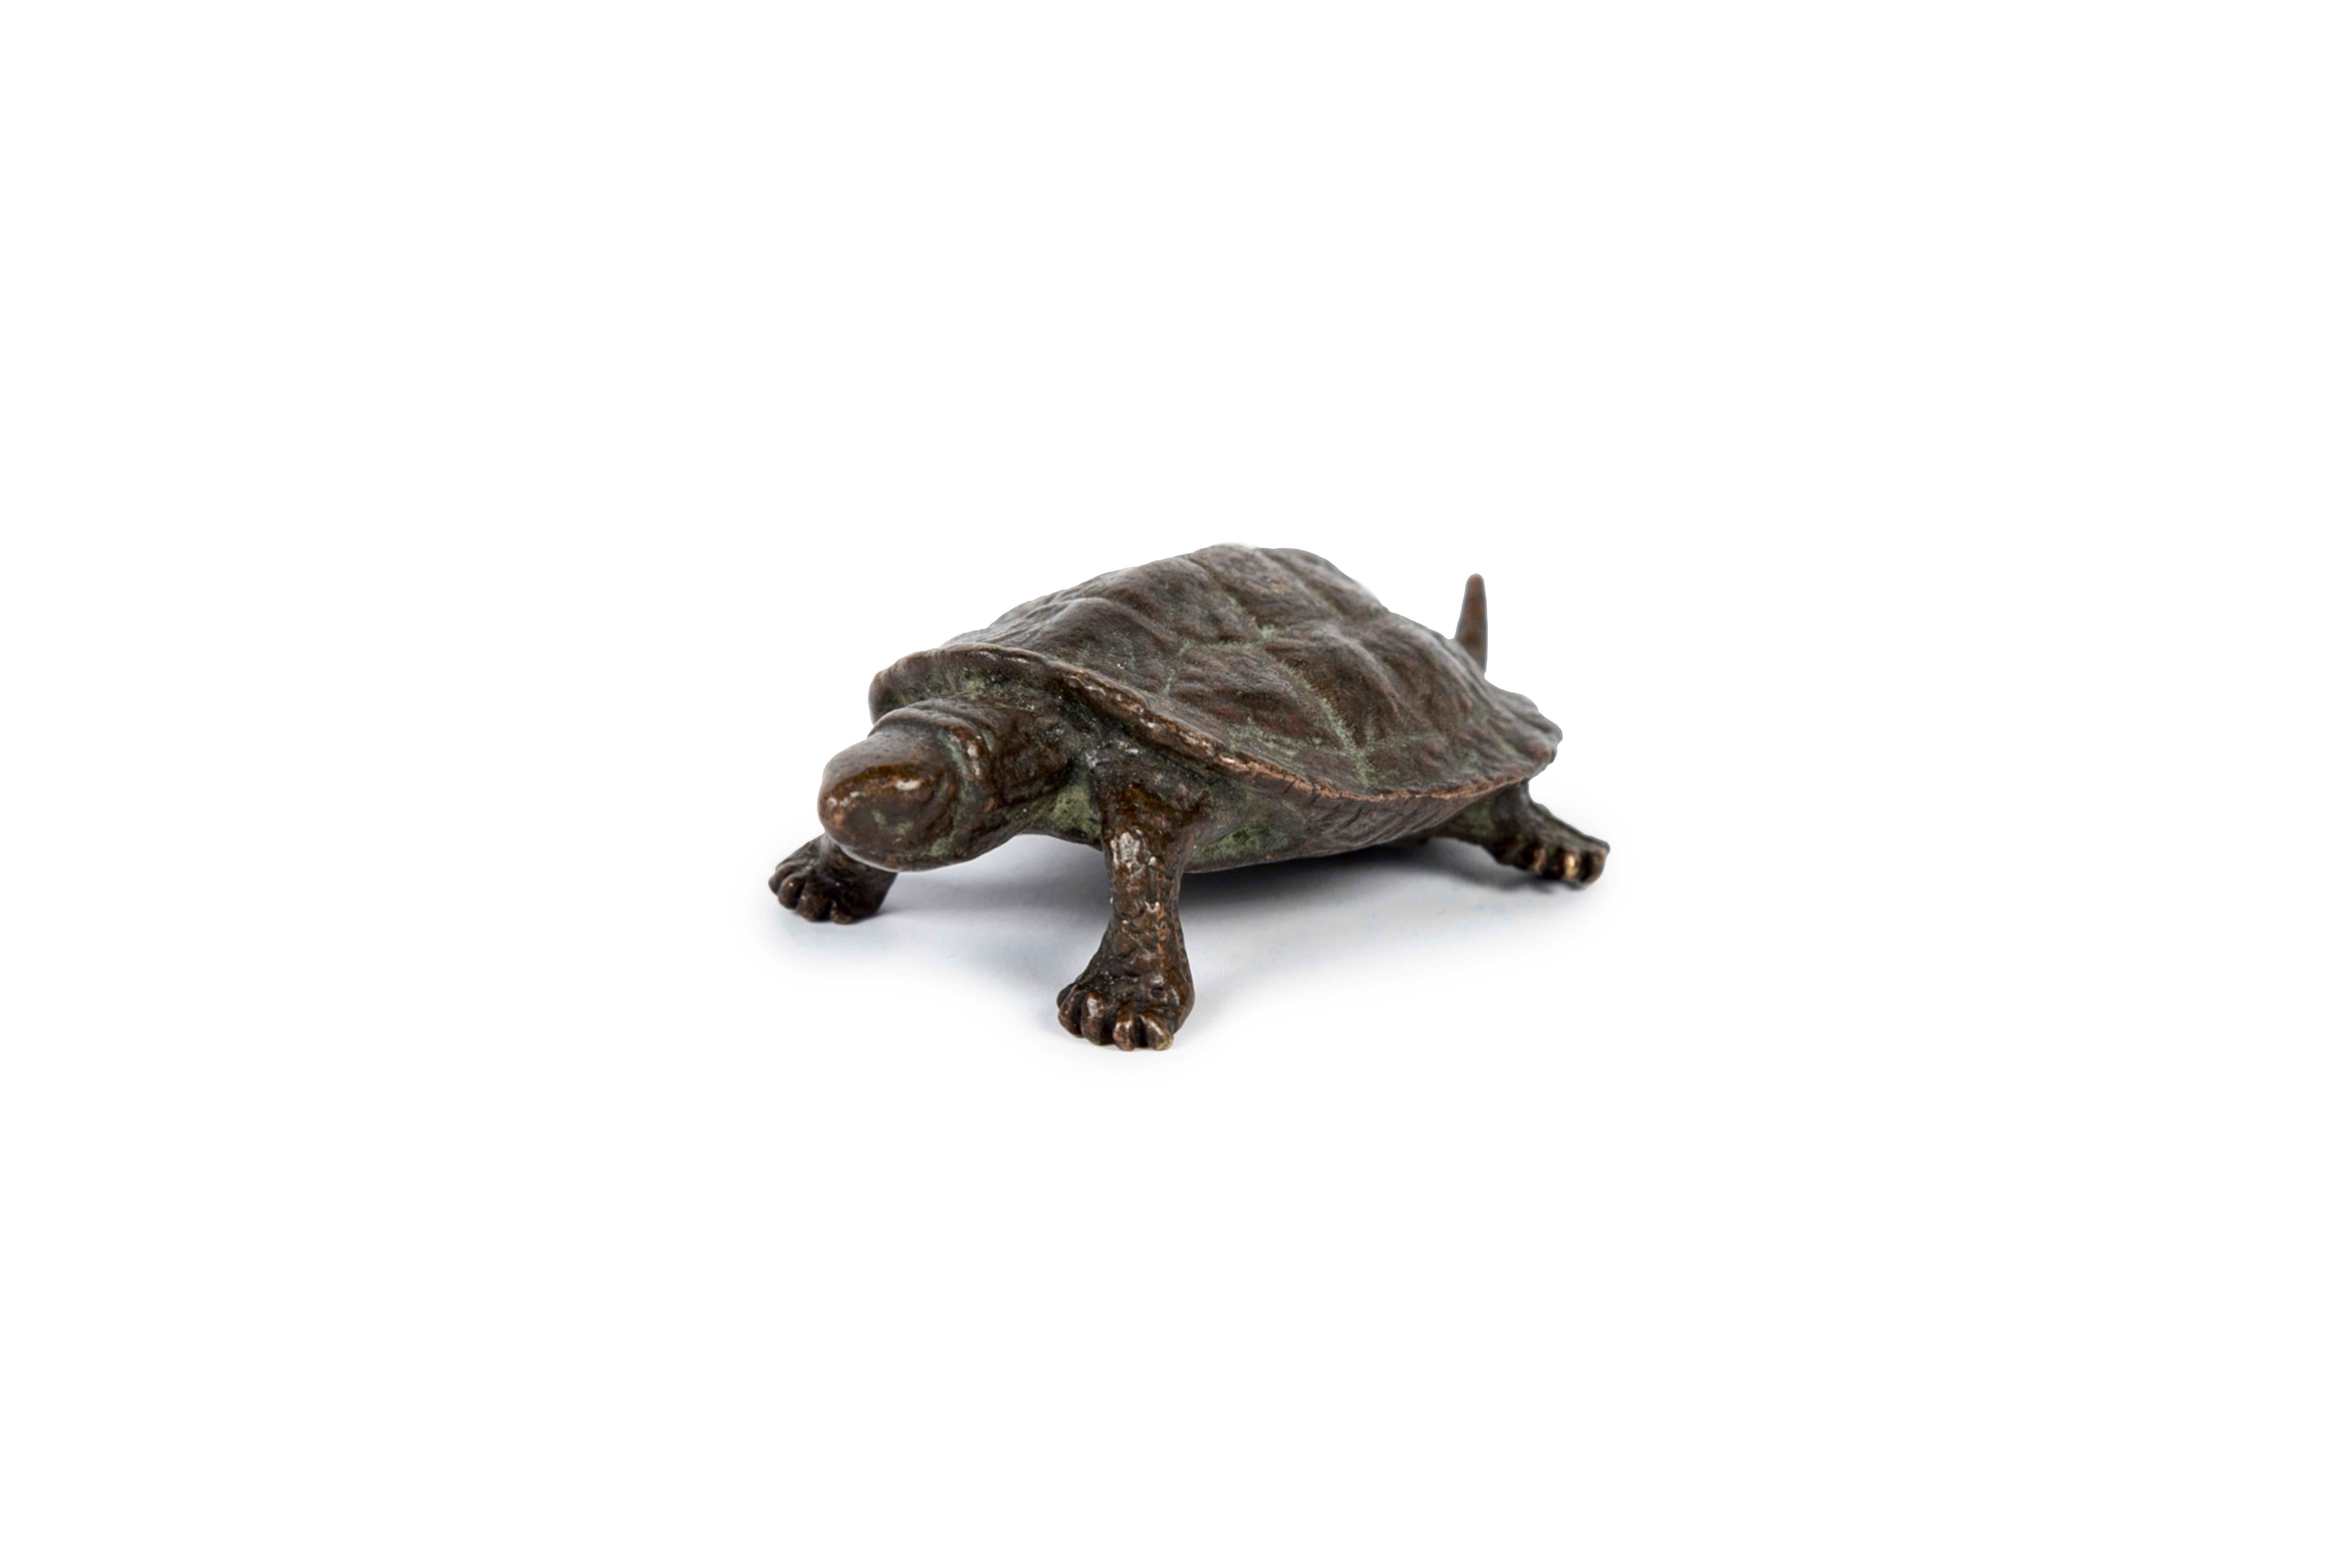 Okimono-Skulptur einer Schildkröte aus Bronze, mit einziehbarem Schwanz.
In Japan ist die Schildkröte (kame) ein Symbol für Langlebigkeit und ein glücksbringendes Tier.
Sie soll zehntausend Jahre Glück bringen.
Signiert Hata (はた) auf der Unterseite